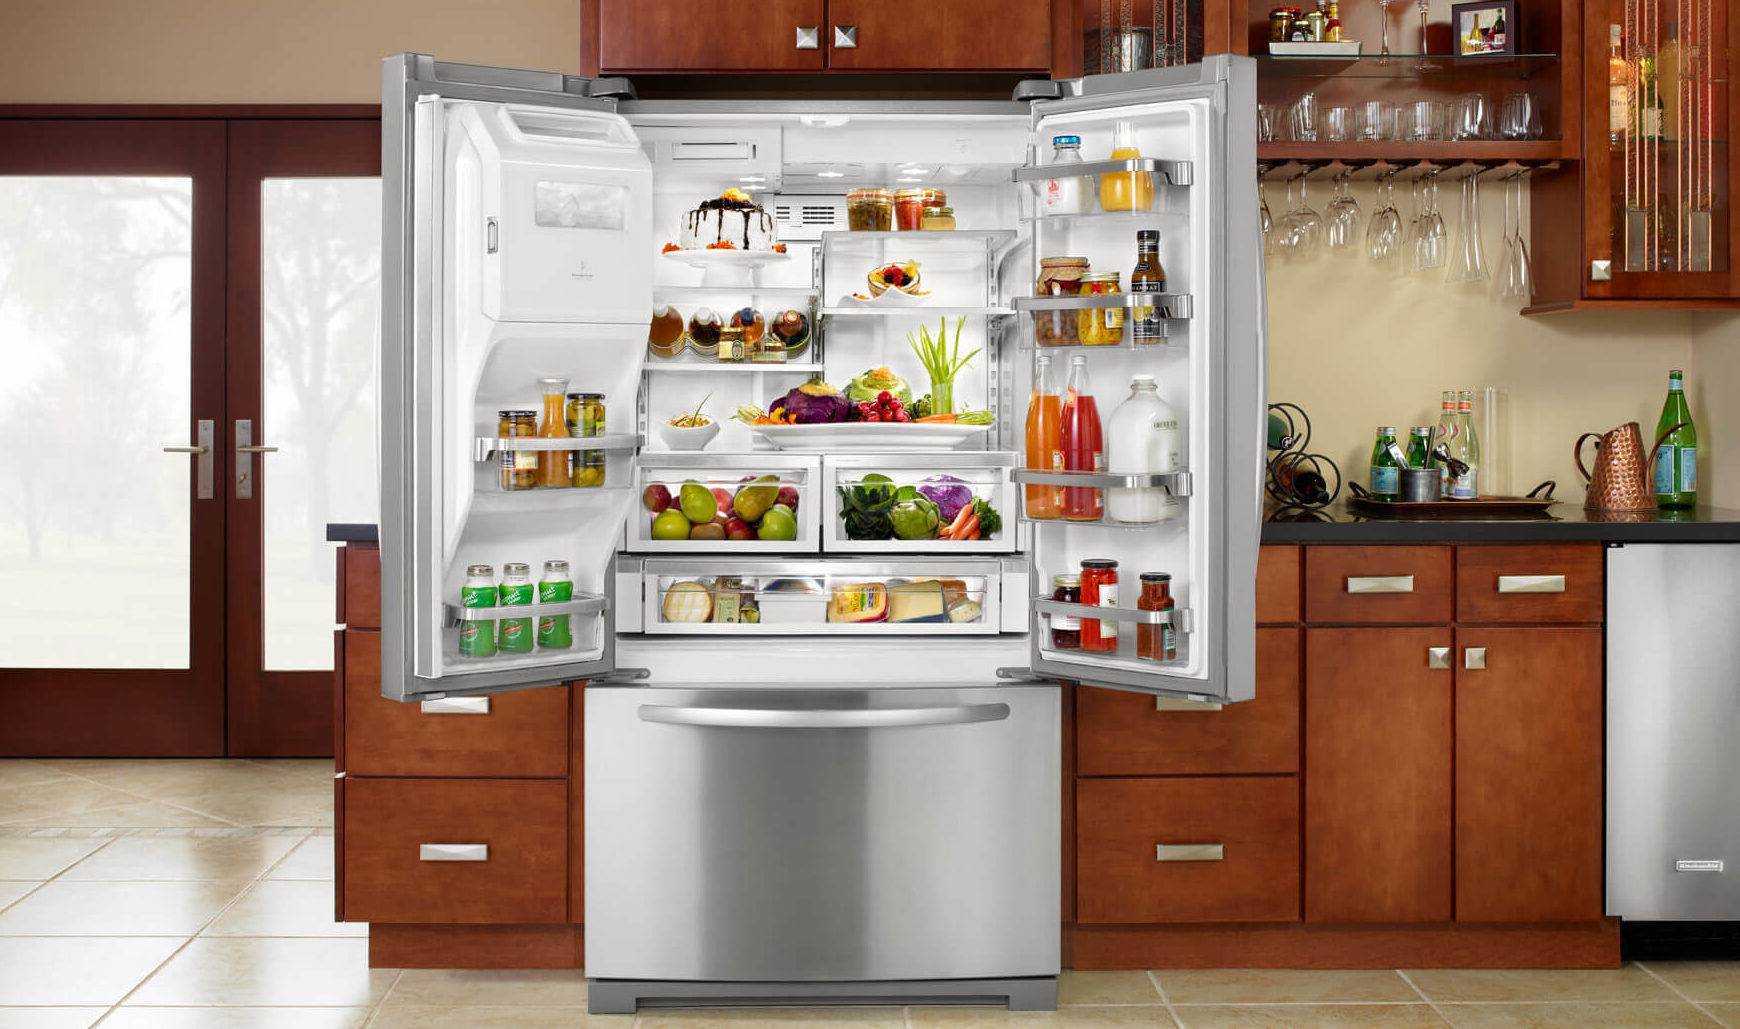 Лучшие встраиваемые холодильники 2022 года: рейтинг хороших моделей по качеству и надежности